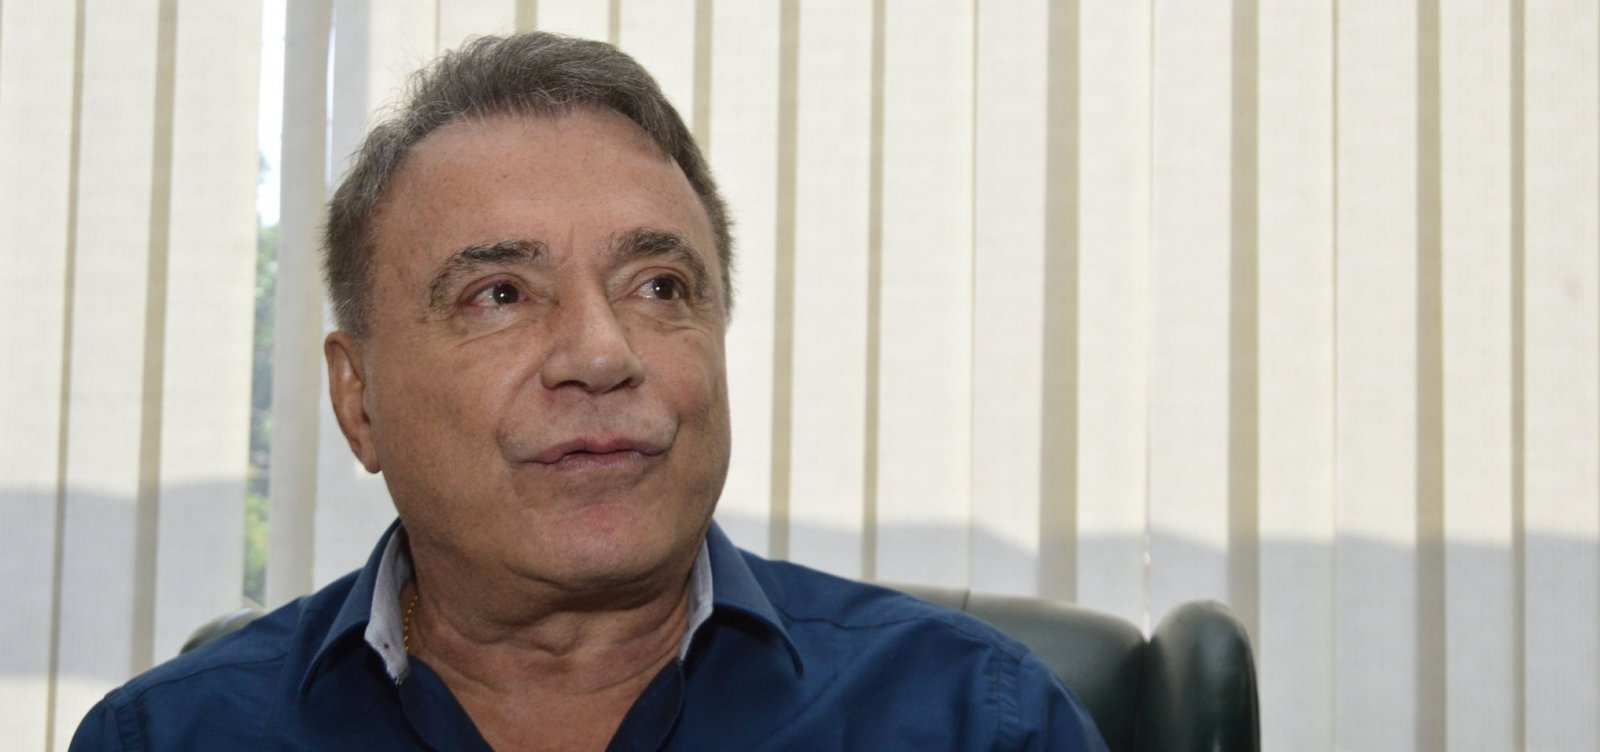 Álvaro Dias diz que baianos ‘desconhecem passado’ dele, mas confia que vai crescer nas pesquisas